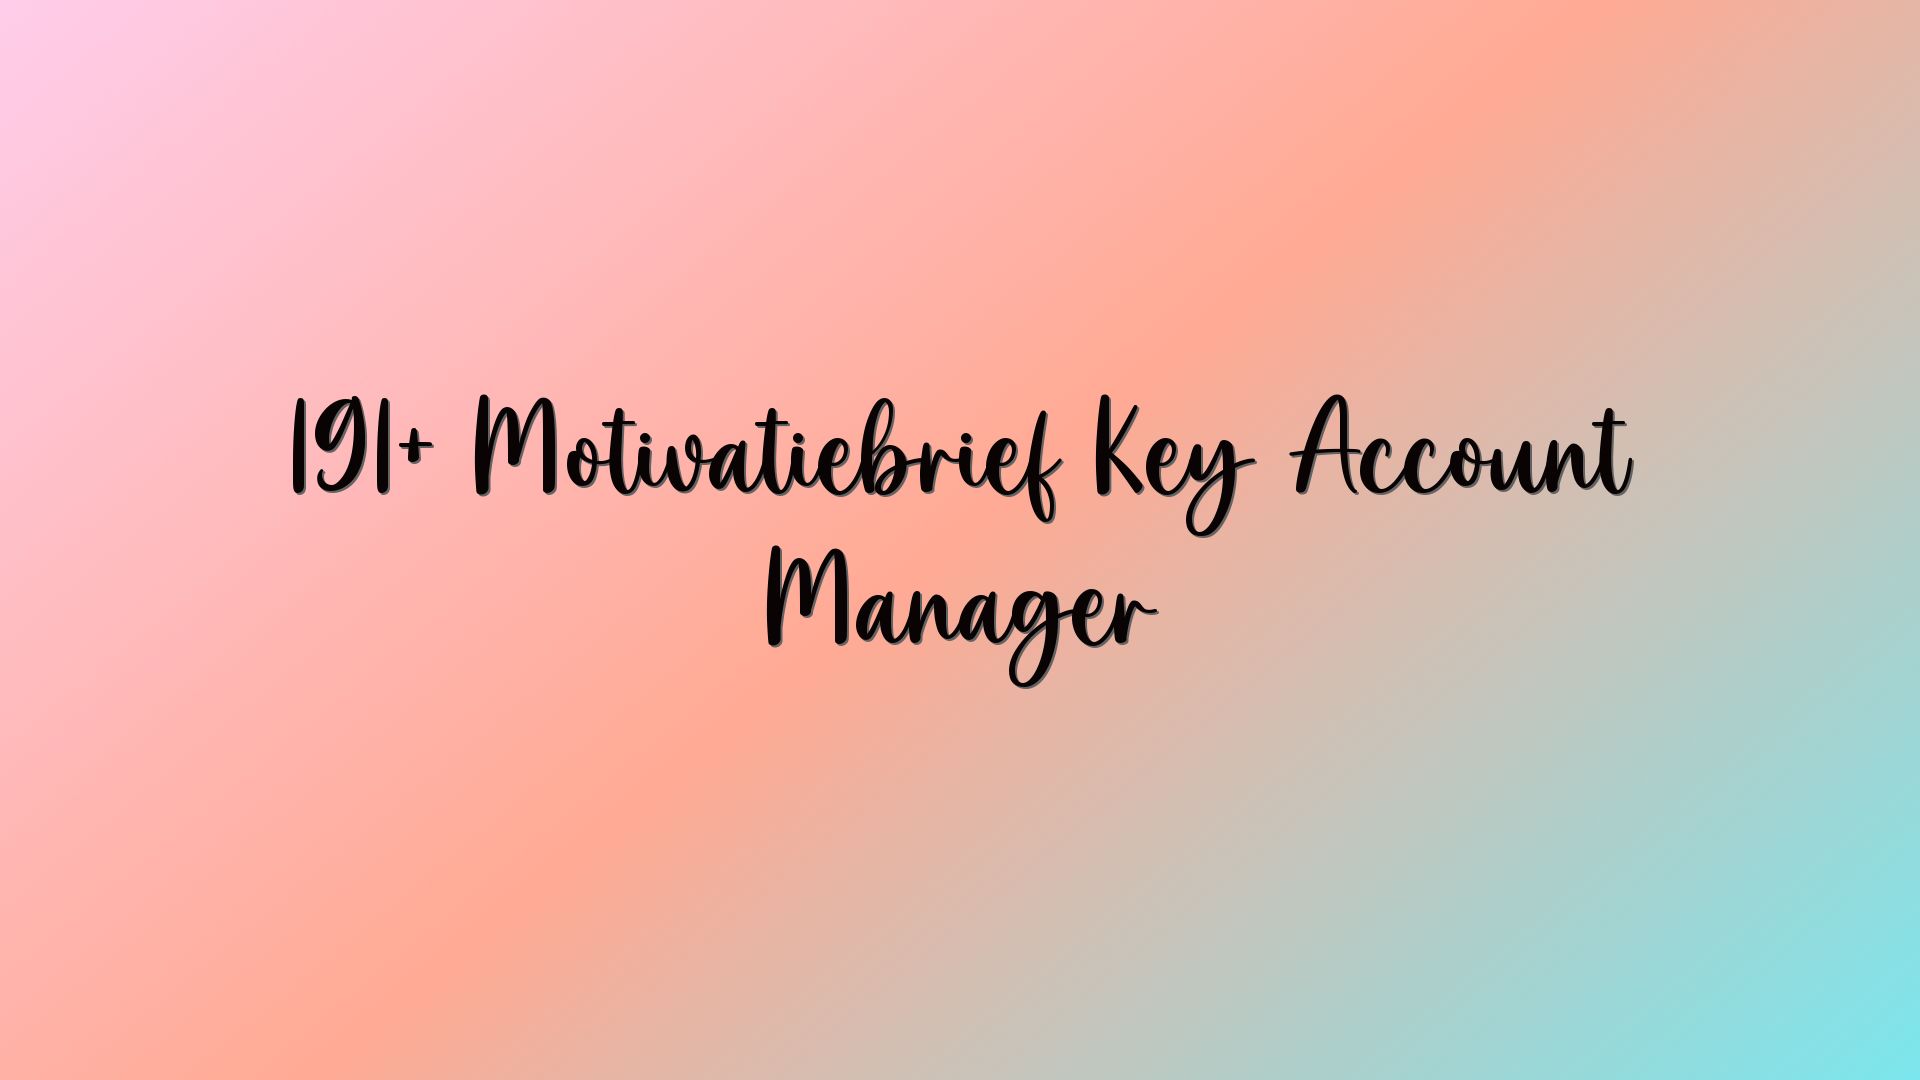 191+ Motivatiebrief Key Account Manager